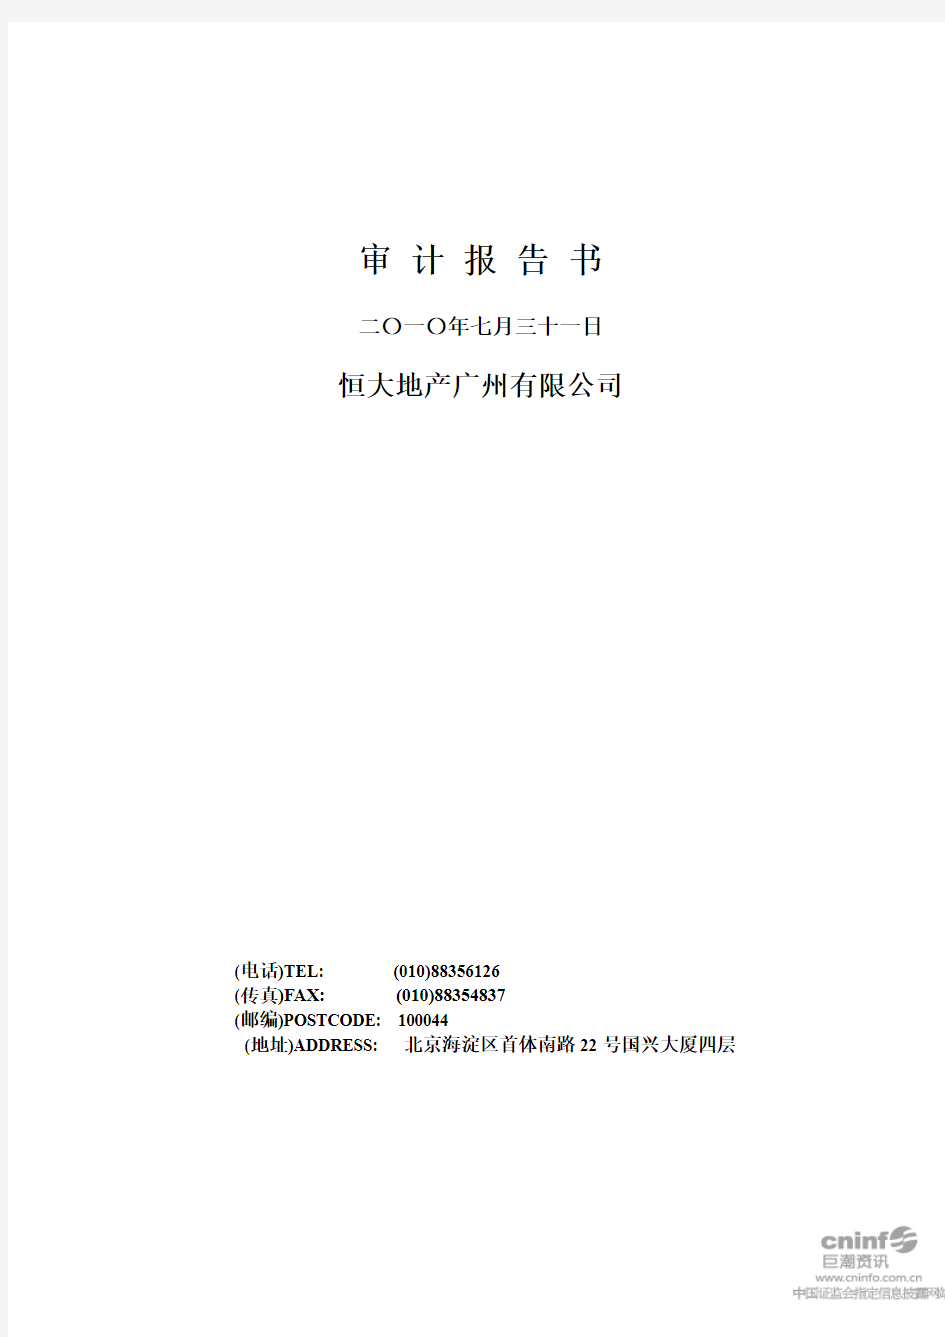 绿景地产：恒大地产广州有限公司审计报告书 2010-09-29